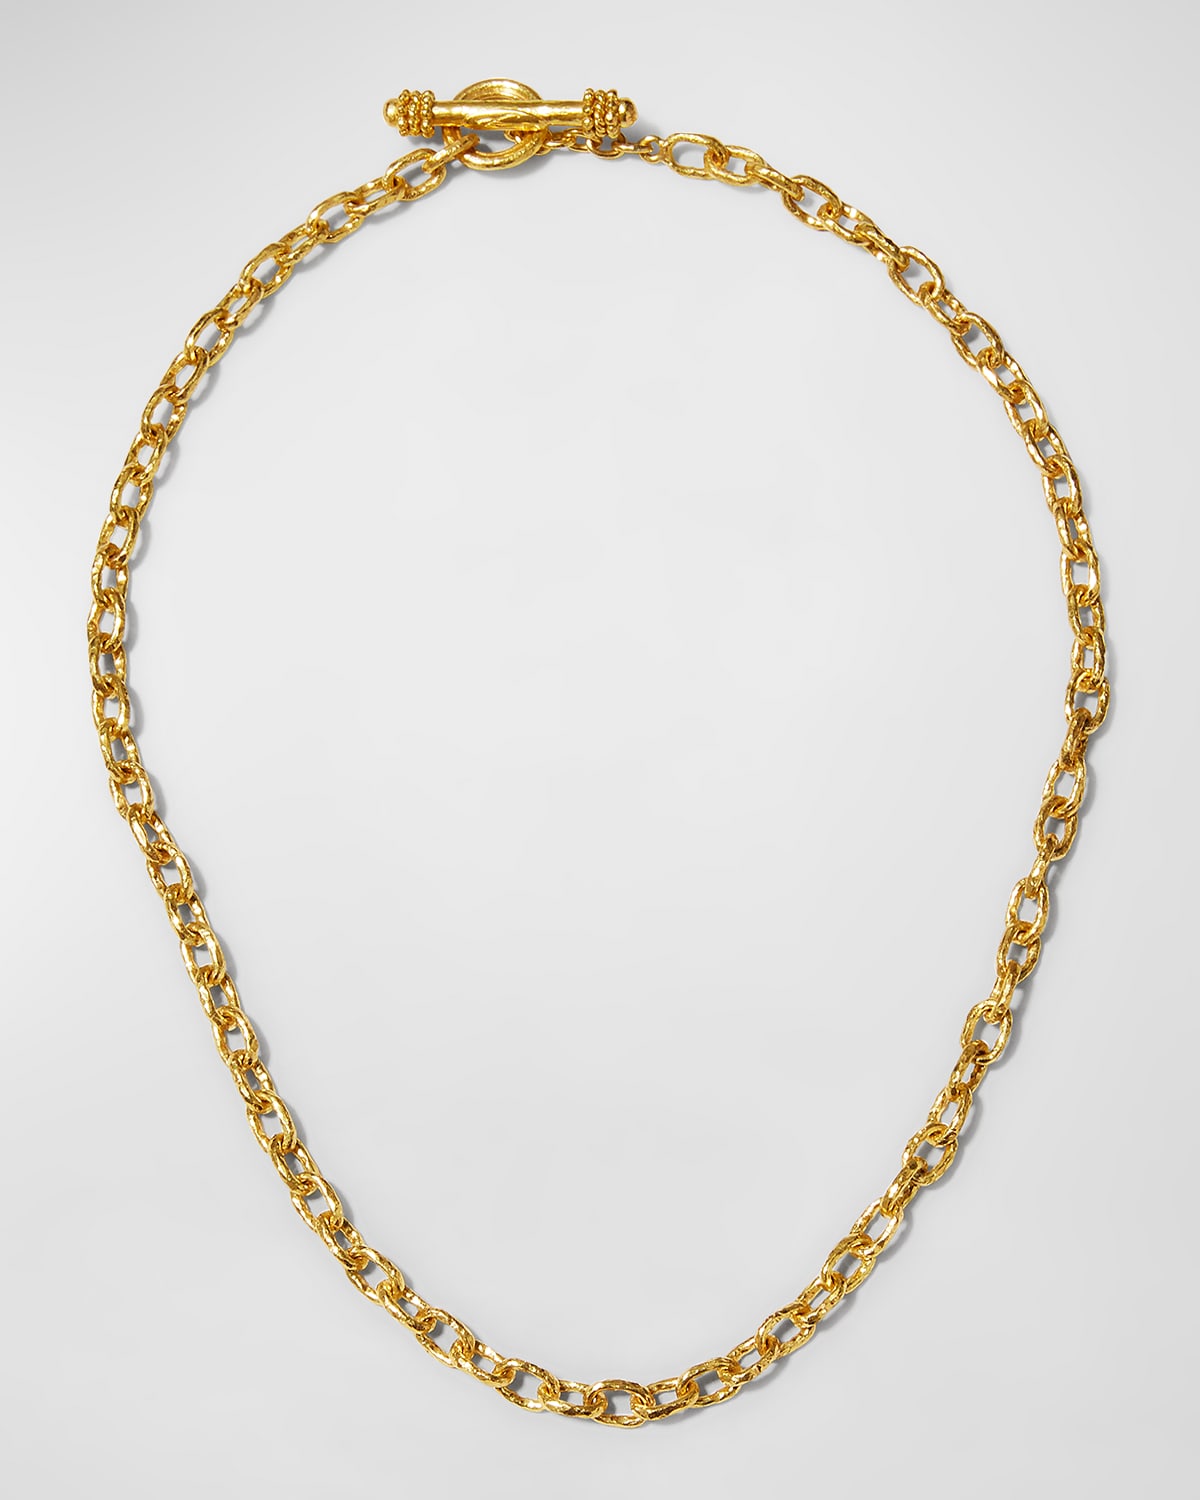 Orvieto 19k Gold Link Necklace, 17"L